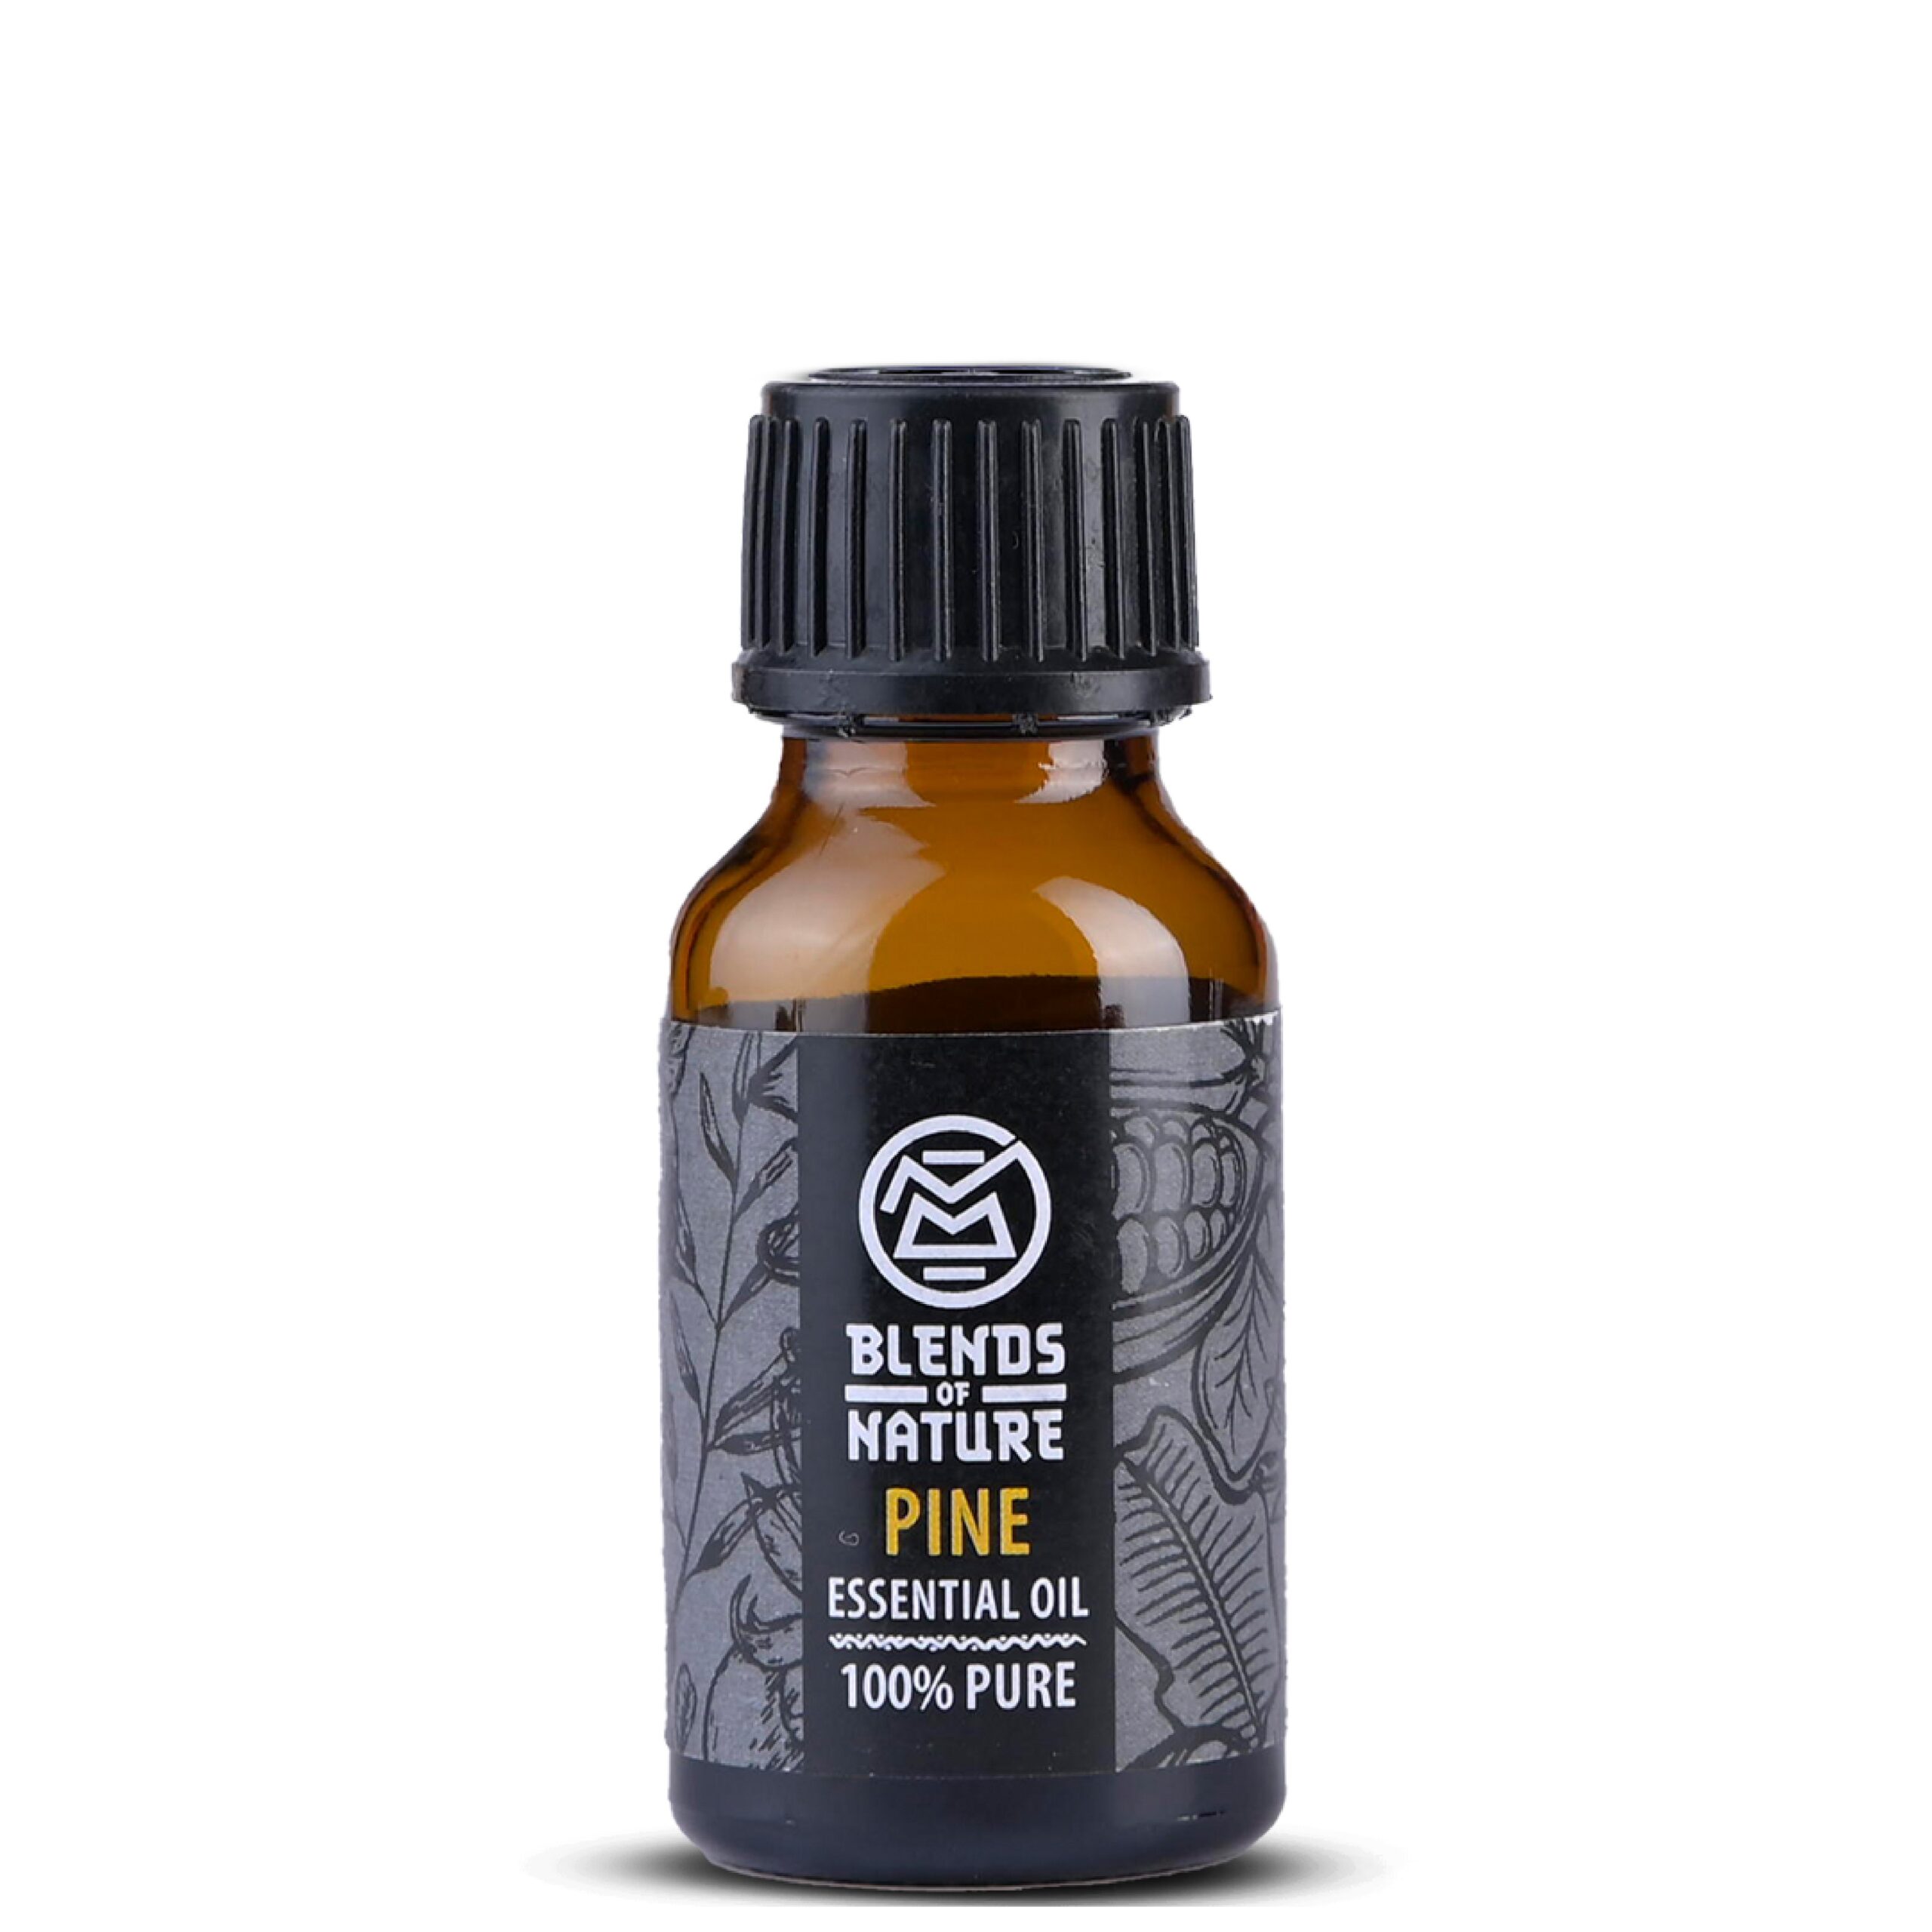 Pine - essential oil s